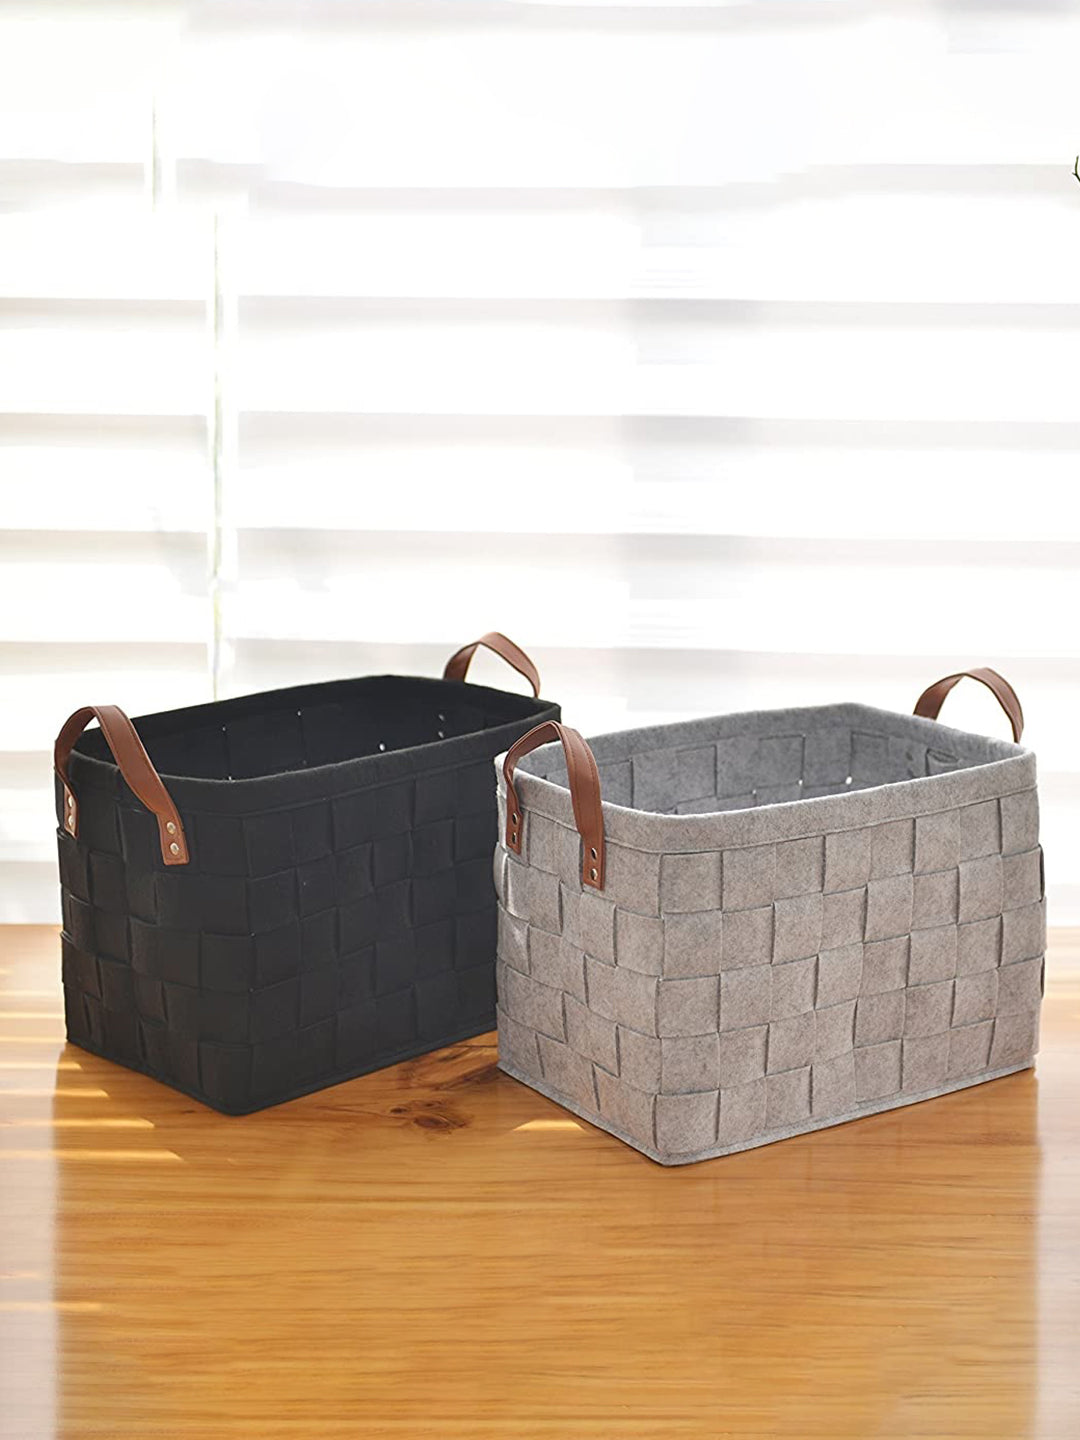 VON CASA Felt Fabric Storage Basket Organizer Boxes - 25 Litre, Dark Grey